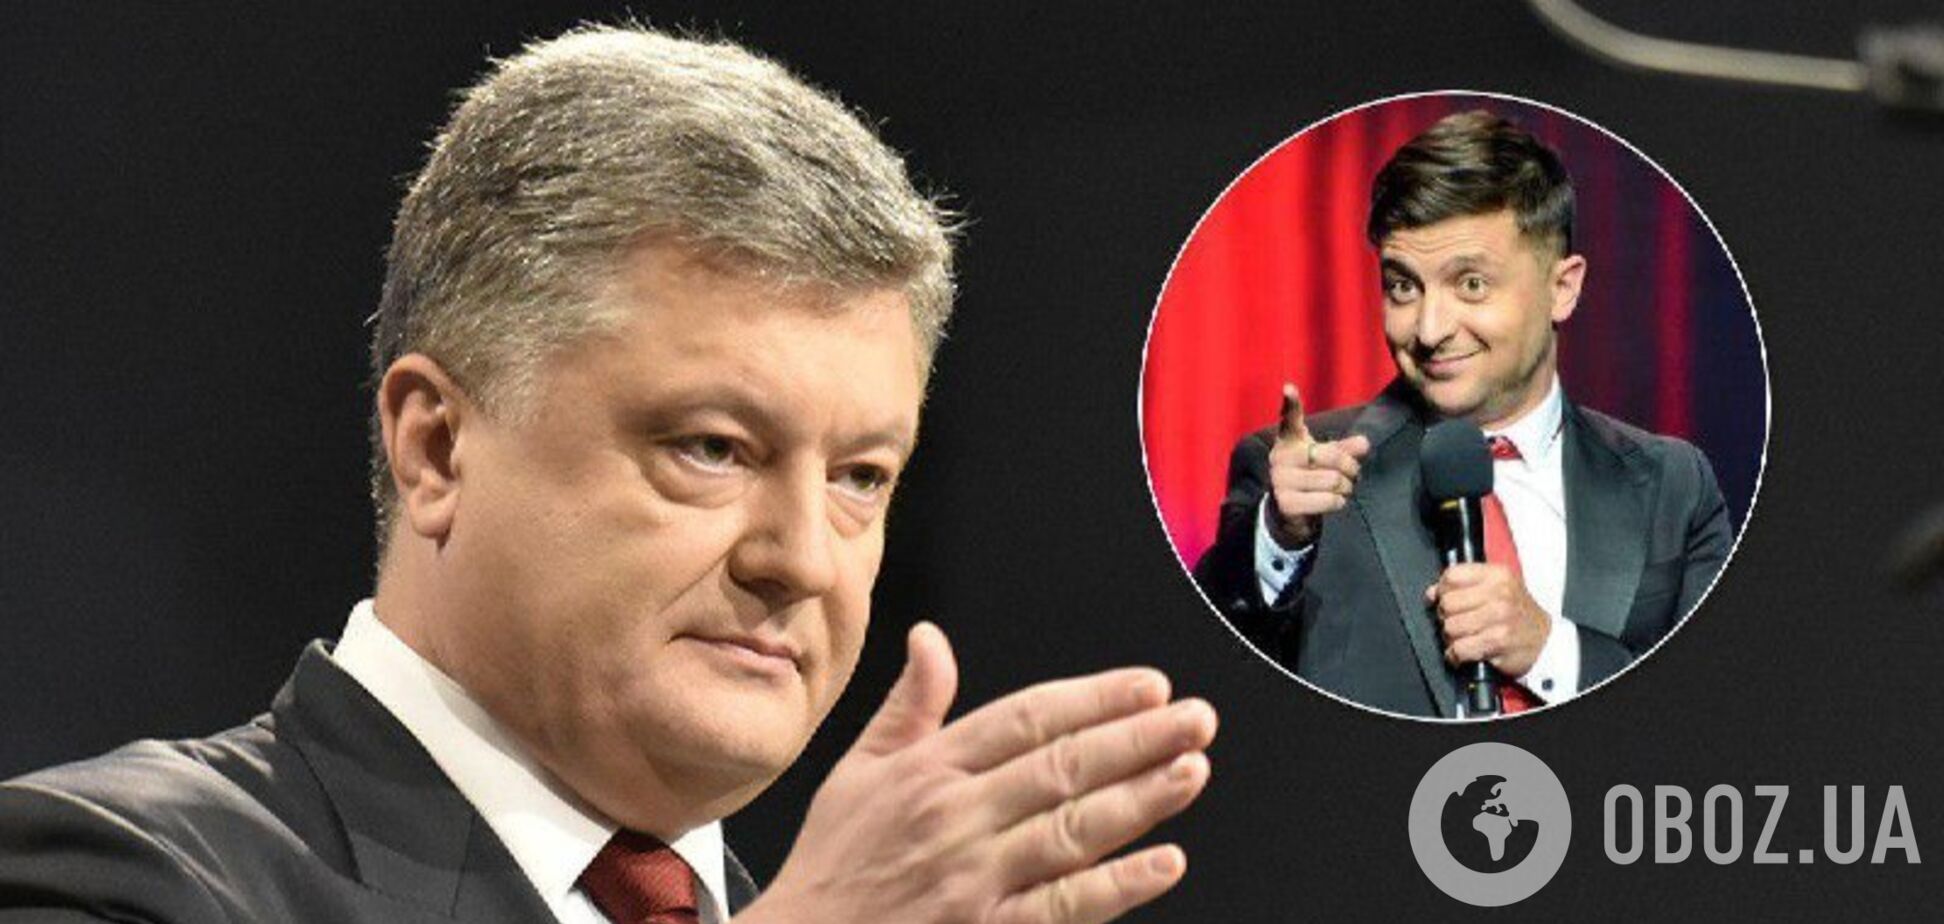 Дебаты-2019: история перепалок Зеленского и Порошенко